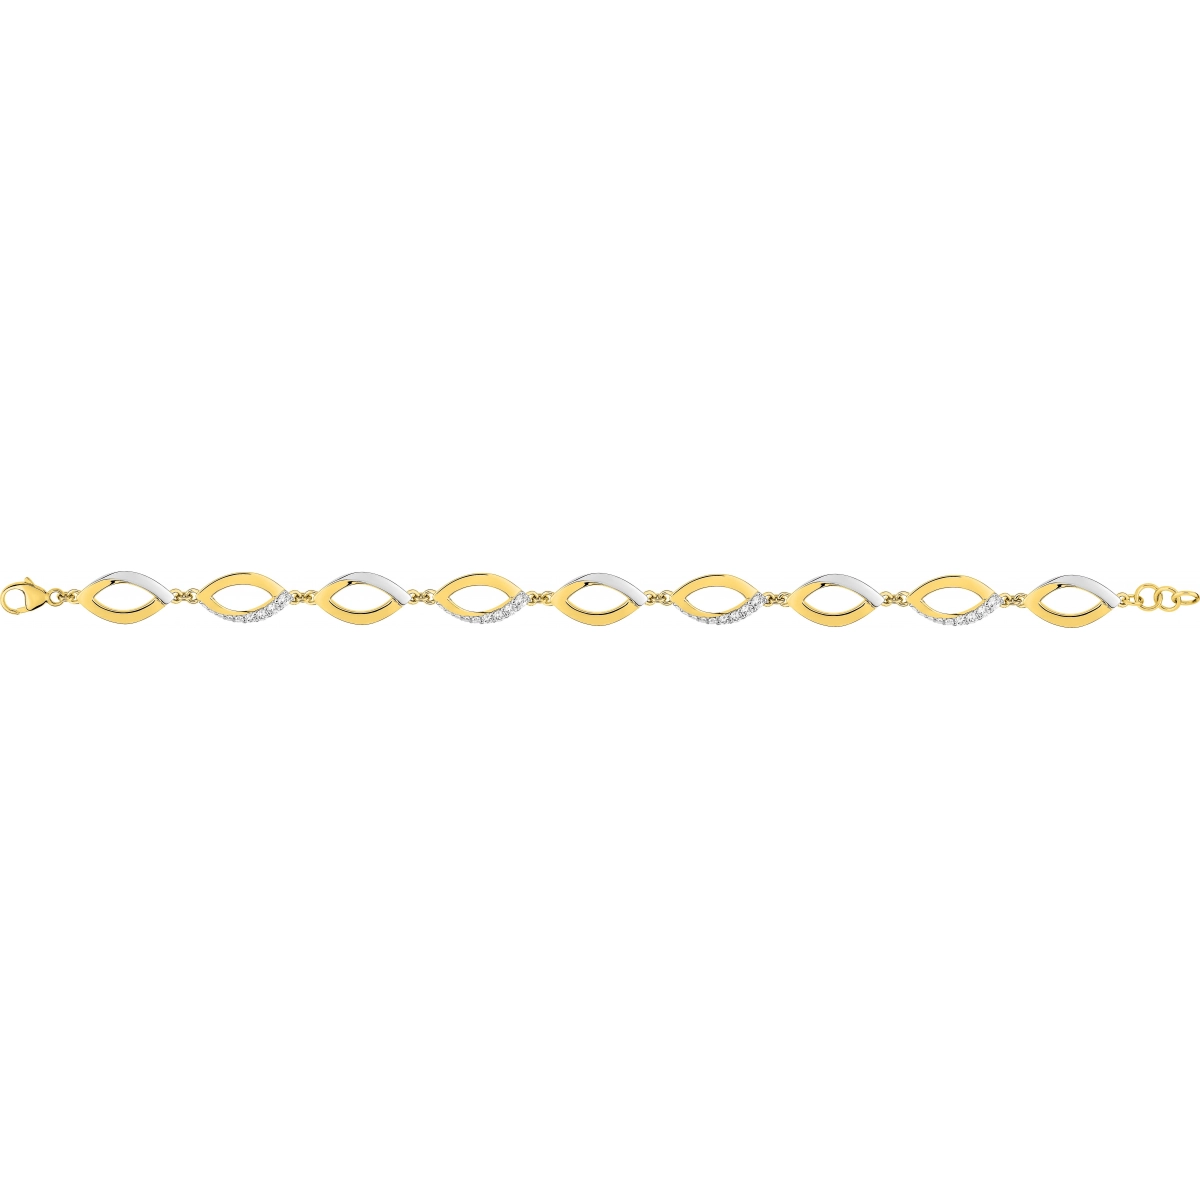 Bracelet 19cm w. cz gold plated Brass 2TG  Lua Blanca  BSBK00Z19.0